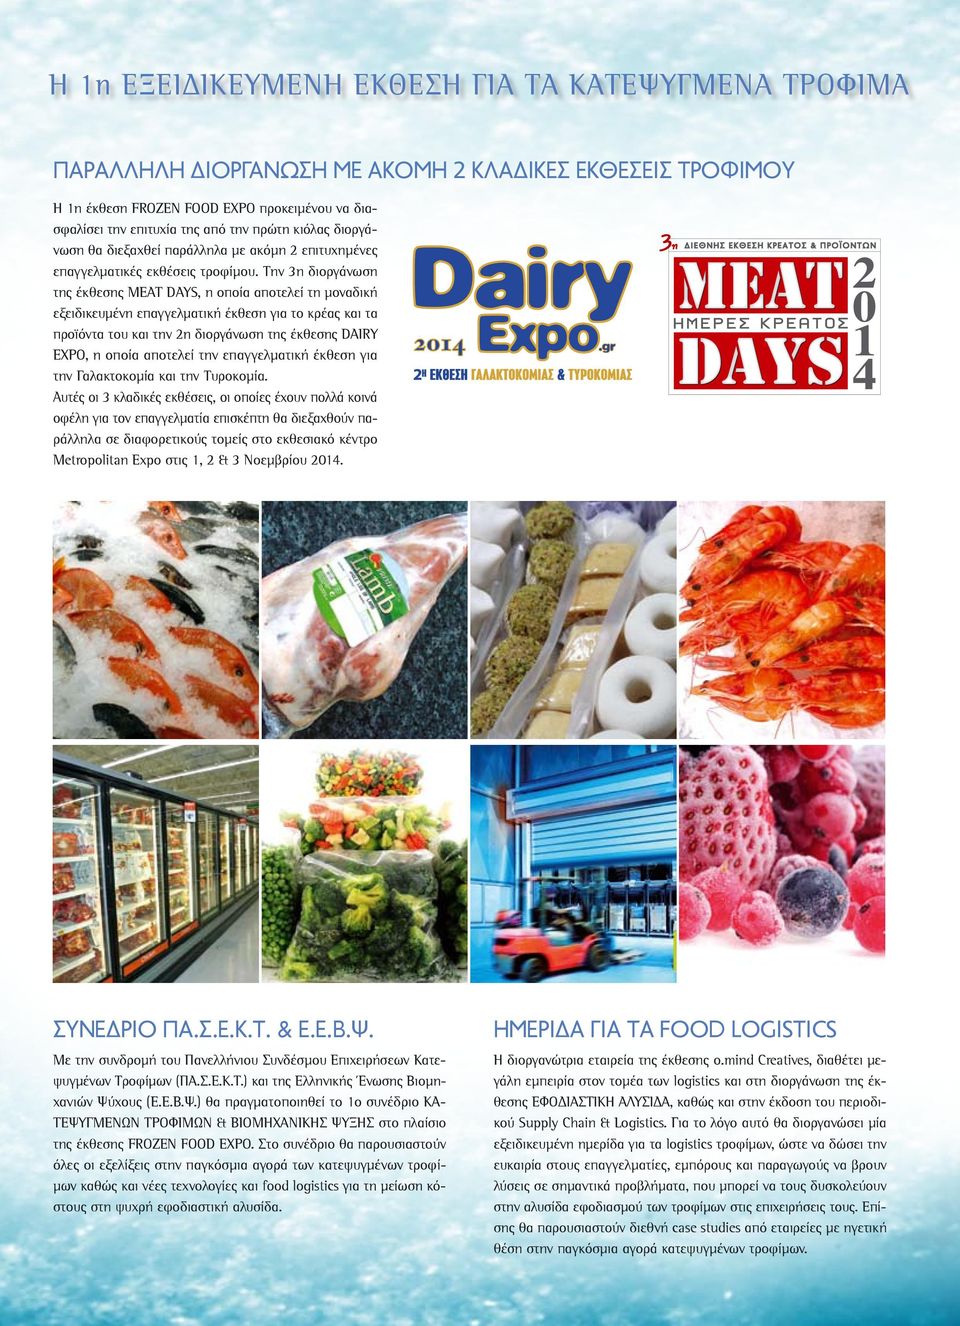 Την 3η διοργάνωση της έκθεσης MEAT DAYS, η οποία αποτελεί τη μοναδική εξειδικευμένη επαγγελματική έκθεση για το κρέας και τα προϊόντα του και την 2η διοργάνωση της έκθεσης DAIRY EXPO, η οποία